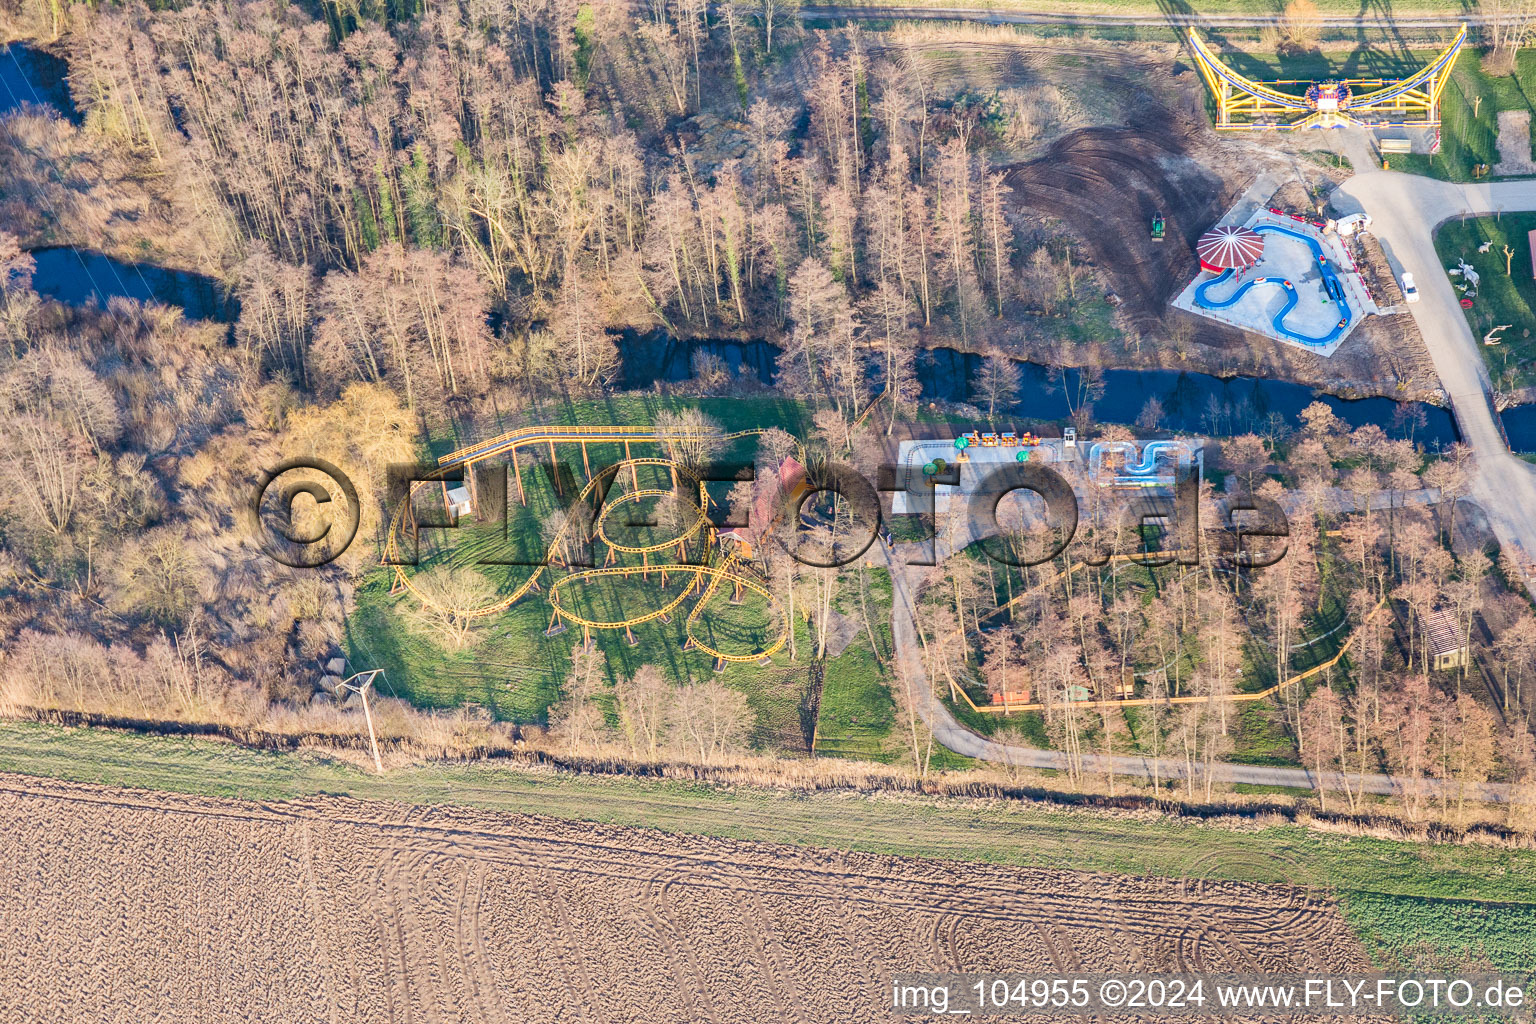 Luftbild von Freizeitzentrum - Vergnügungspark Didiland in Morsbronn-les-Bains in Grand Est im Bundesland Bas-Rhin, Frankreich